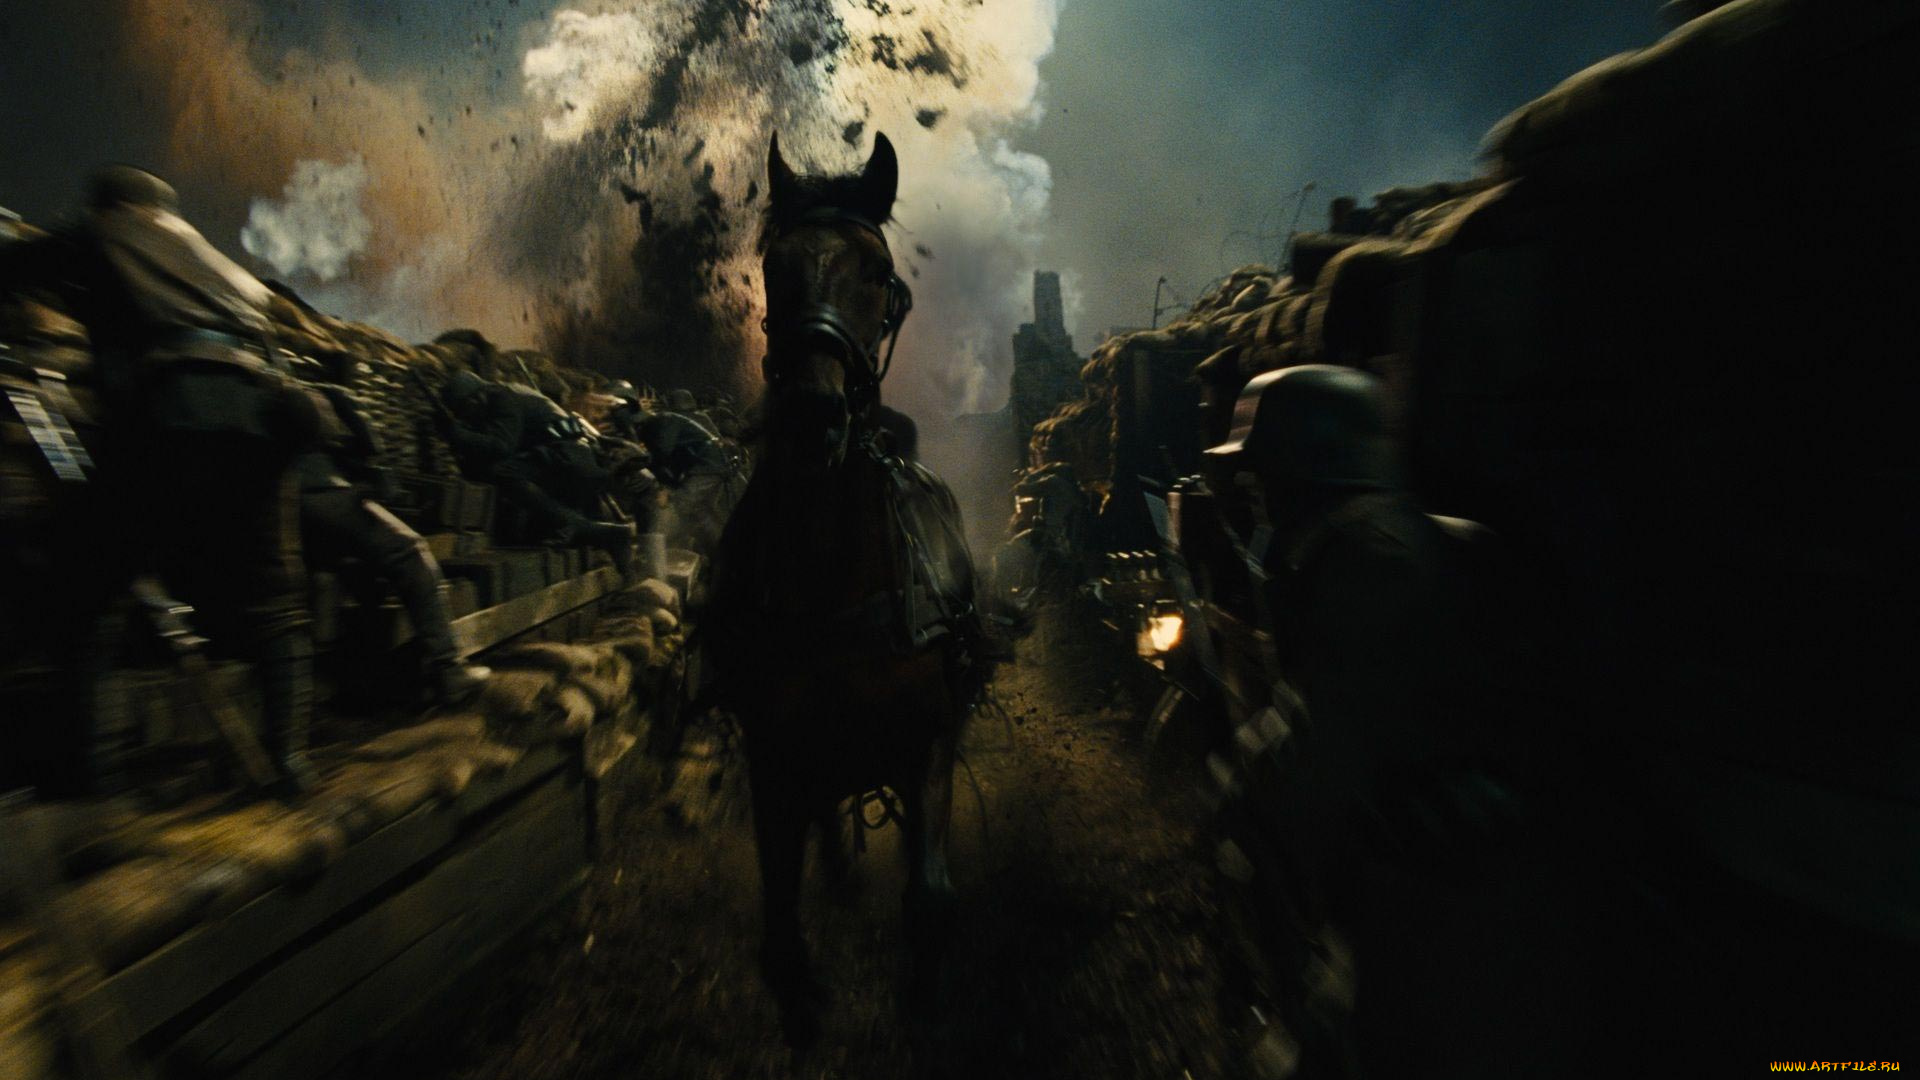 war, horse, кино, фильмы, боевой, конь